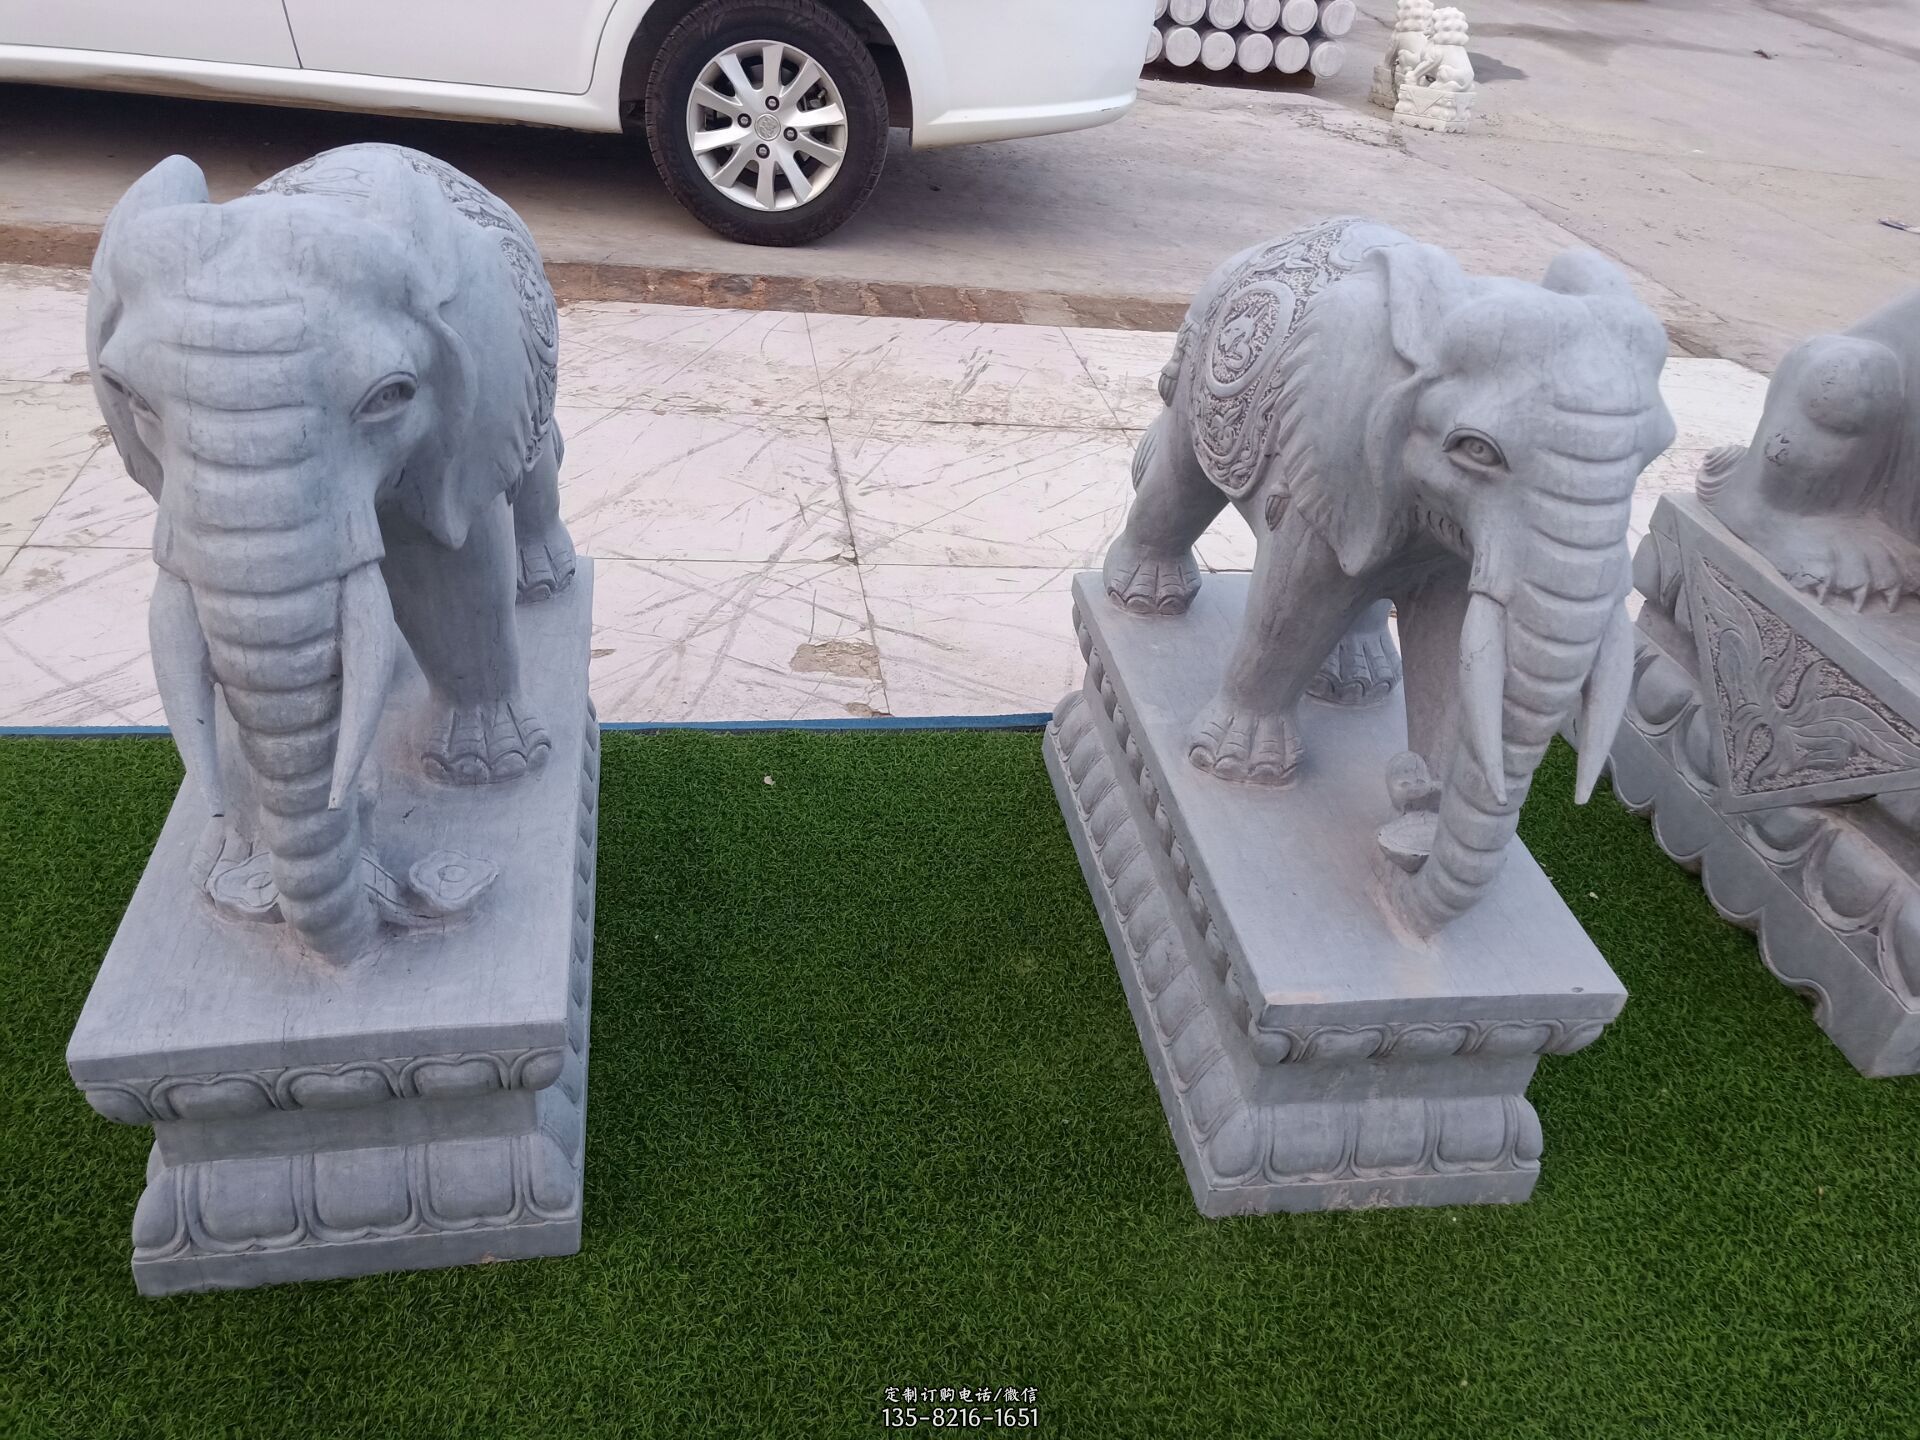 小石雕大象-景区园林名人大象之西部歌王王洛宾铜雕塑像